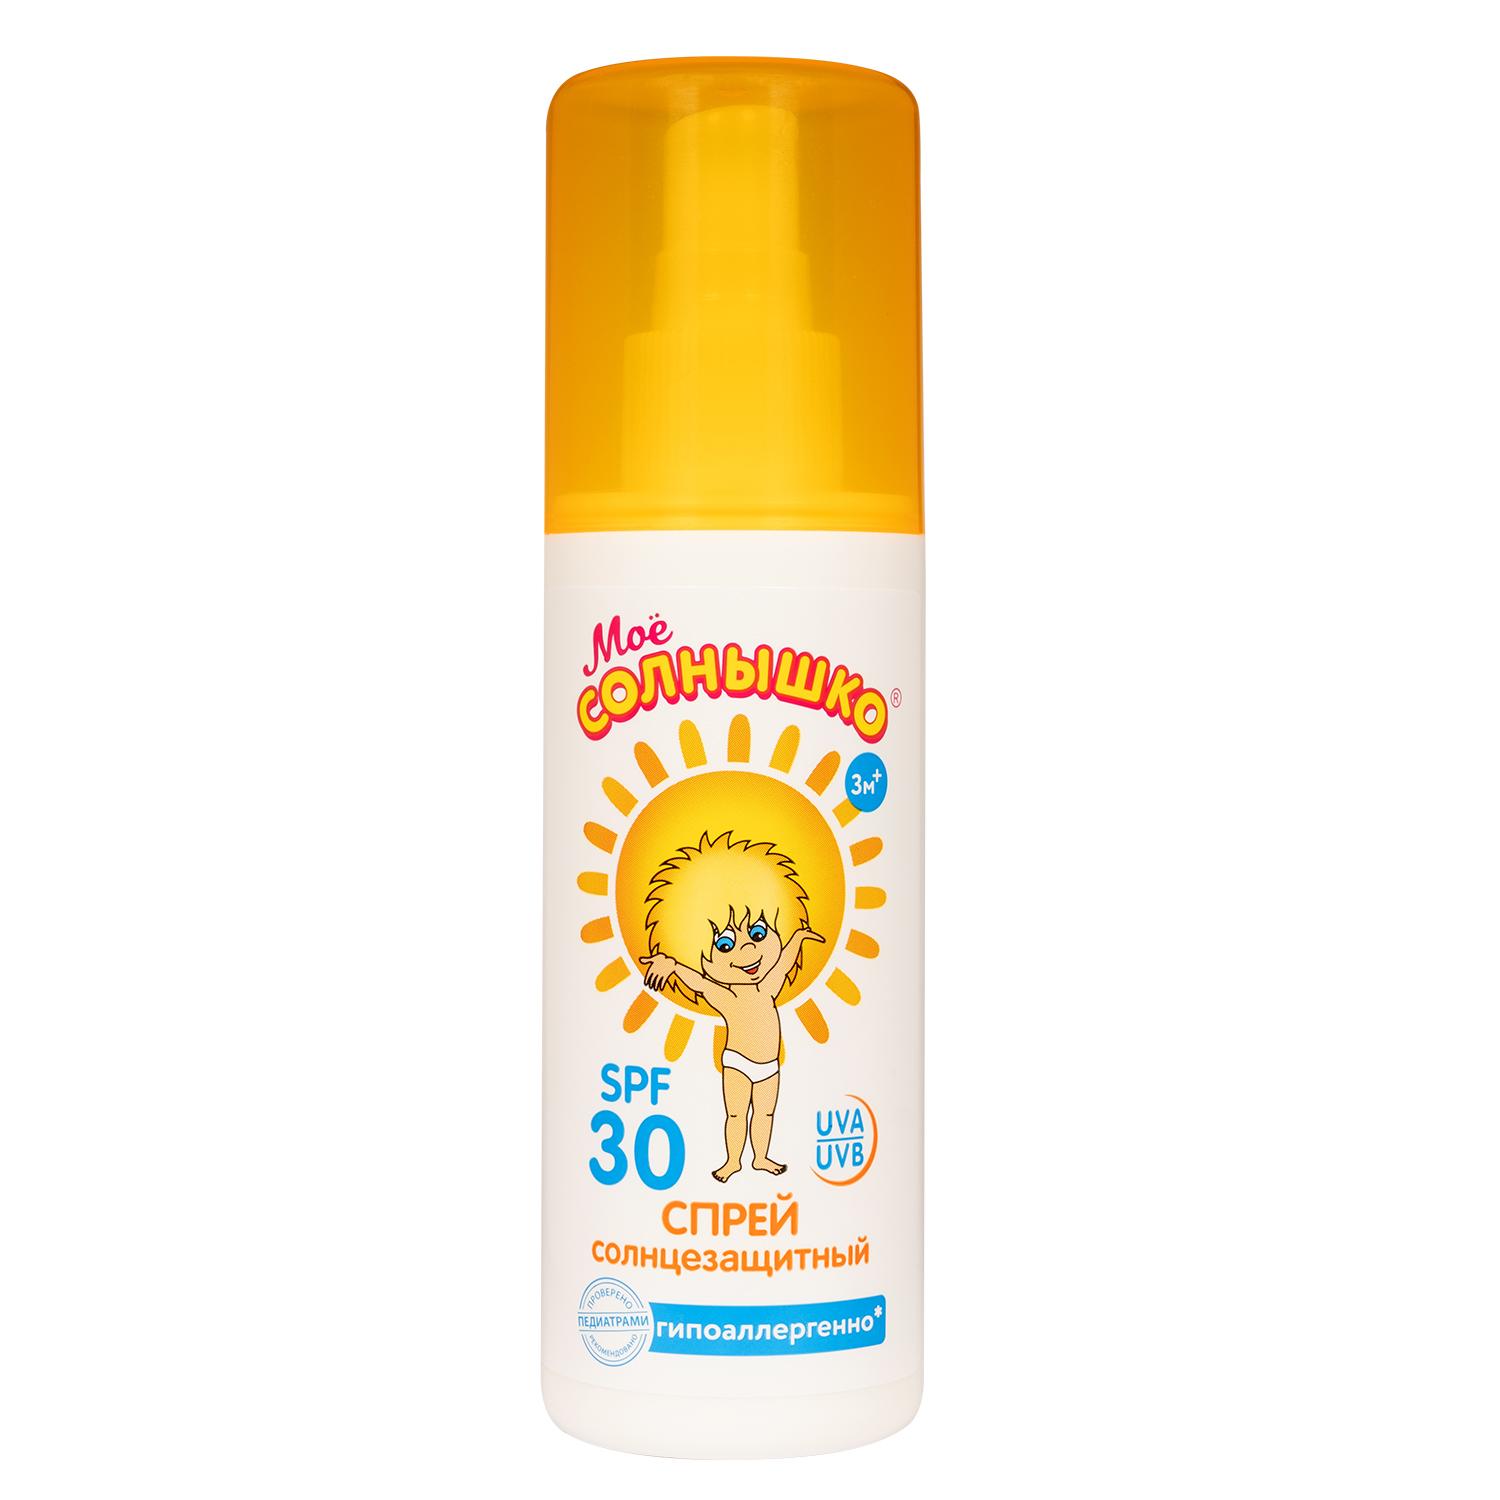 Спрей Мое солнышко Солнцезащитный детский SPF 30 серии, 100 мл., аэрозольная упаковка